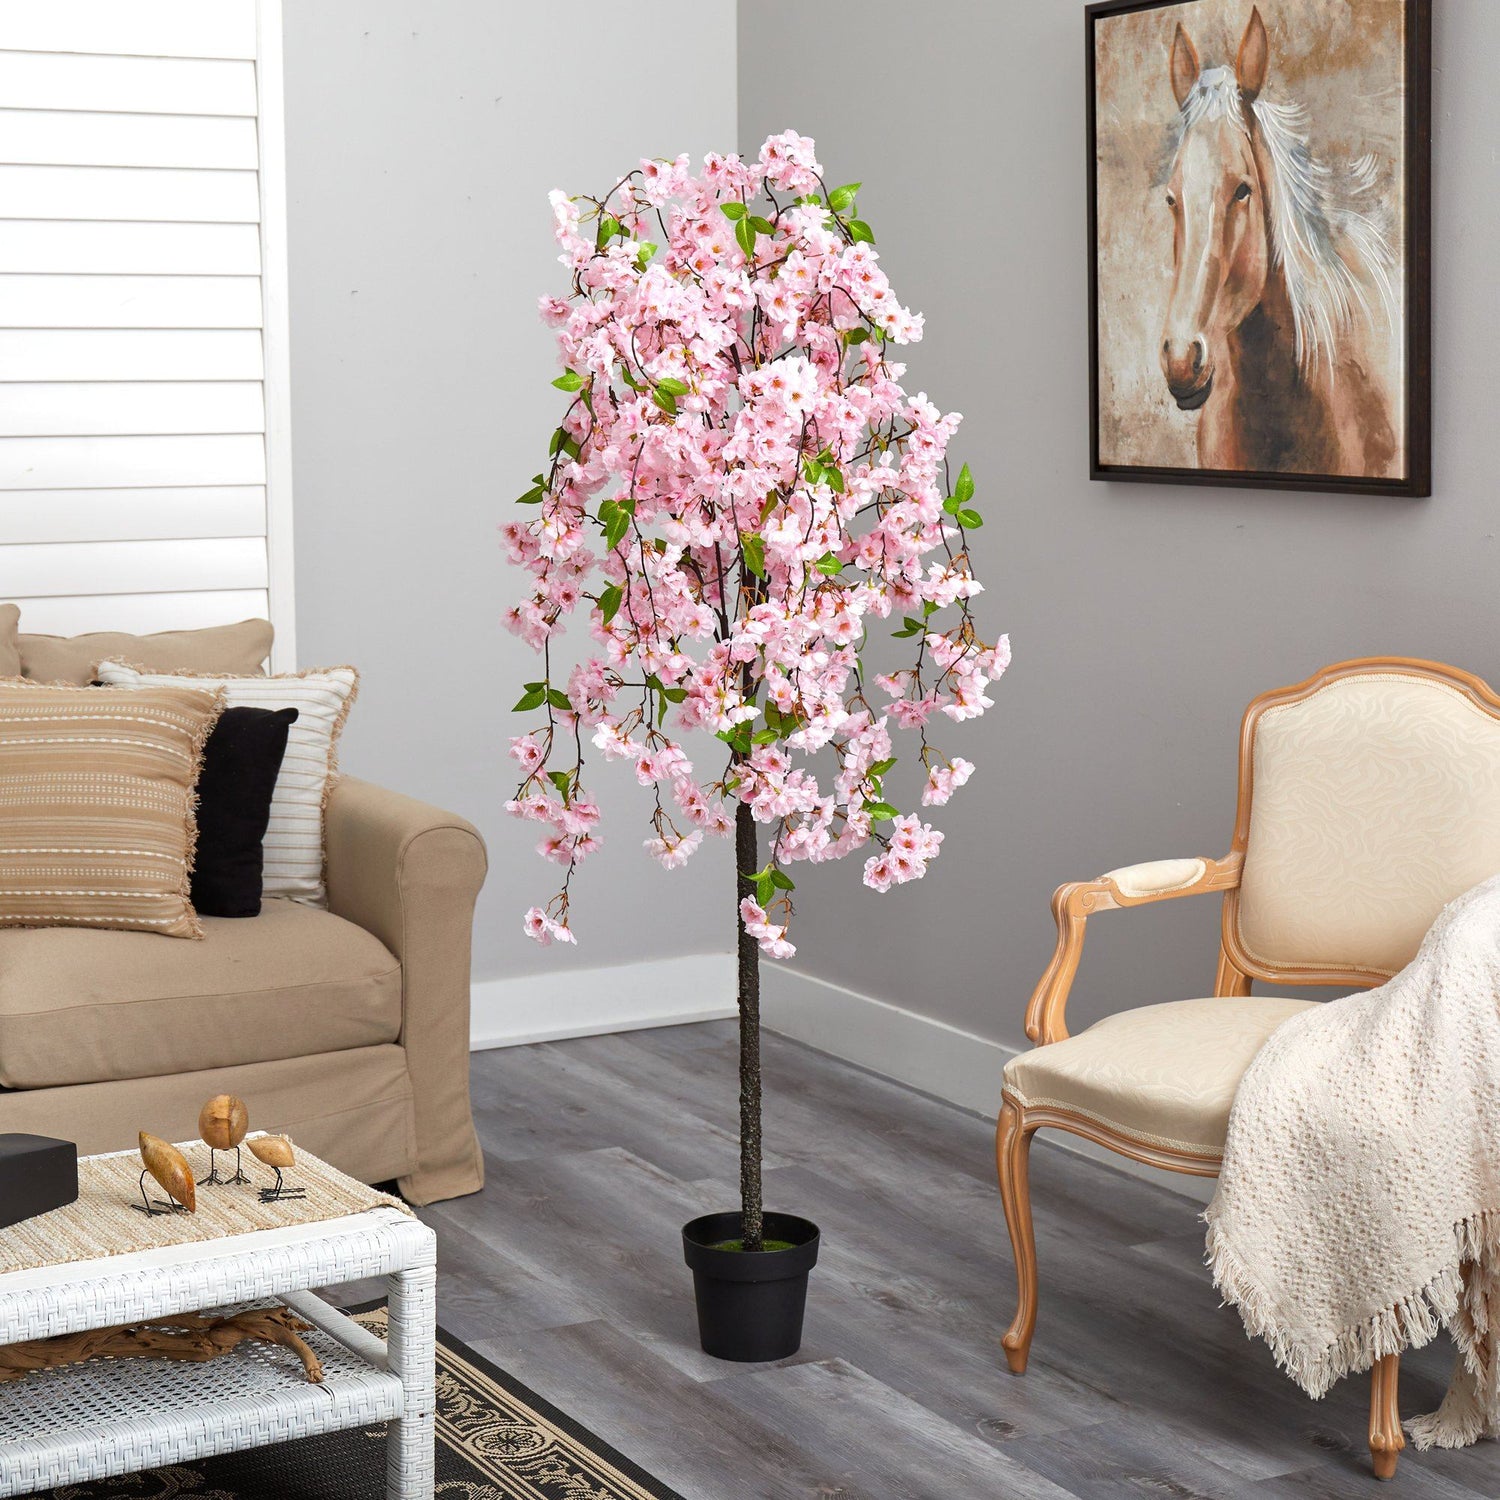 5' Artificial Cherry Blossom Tree